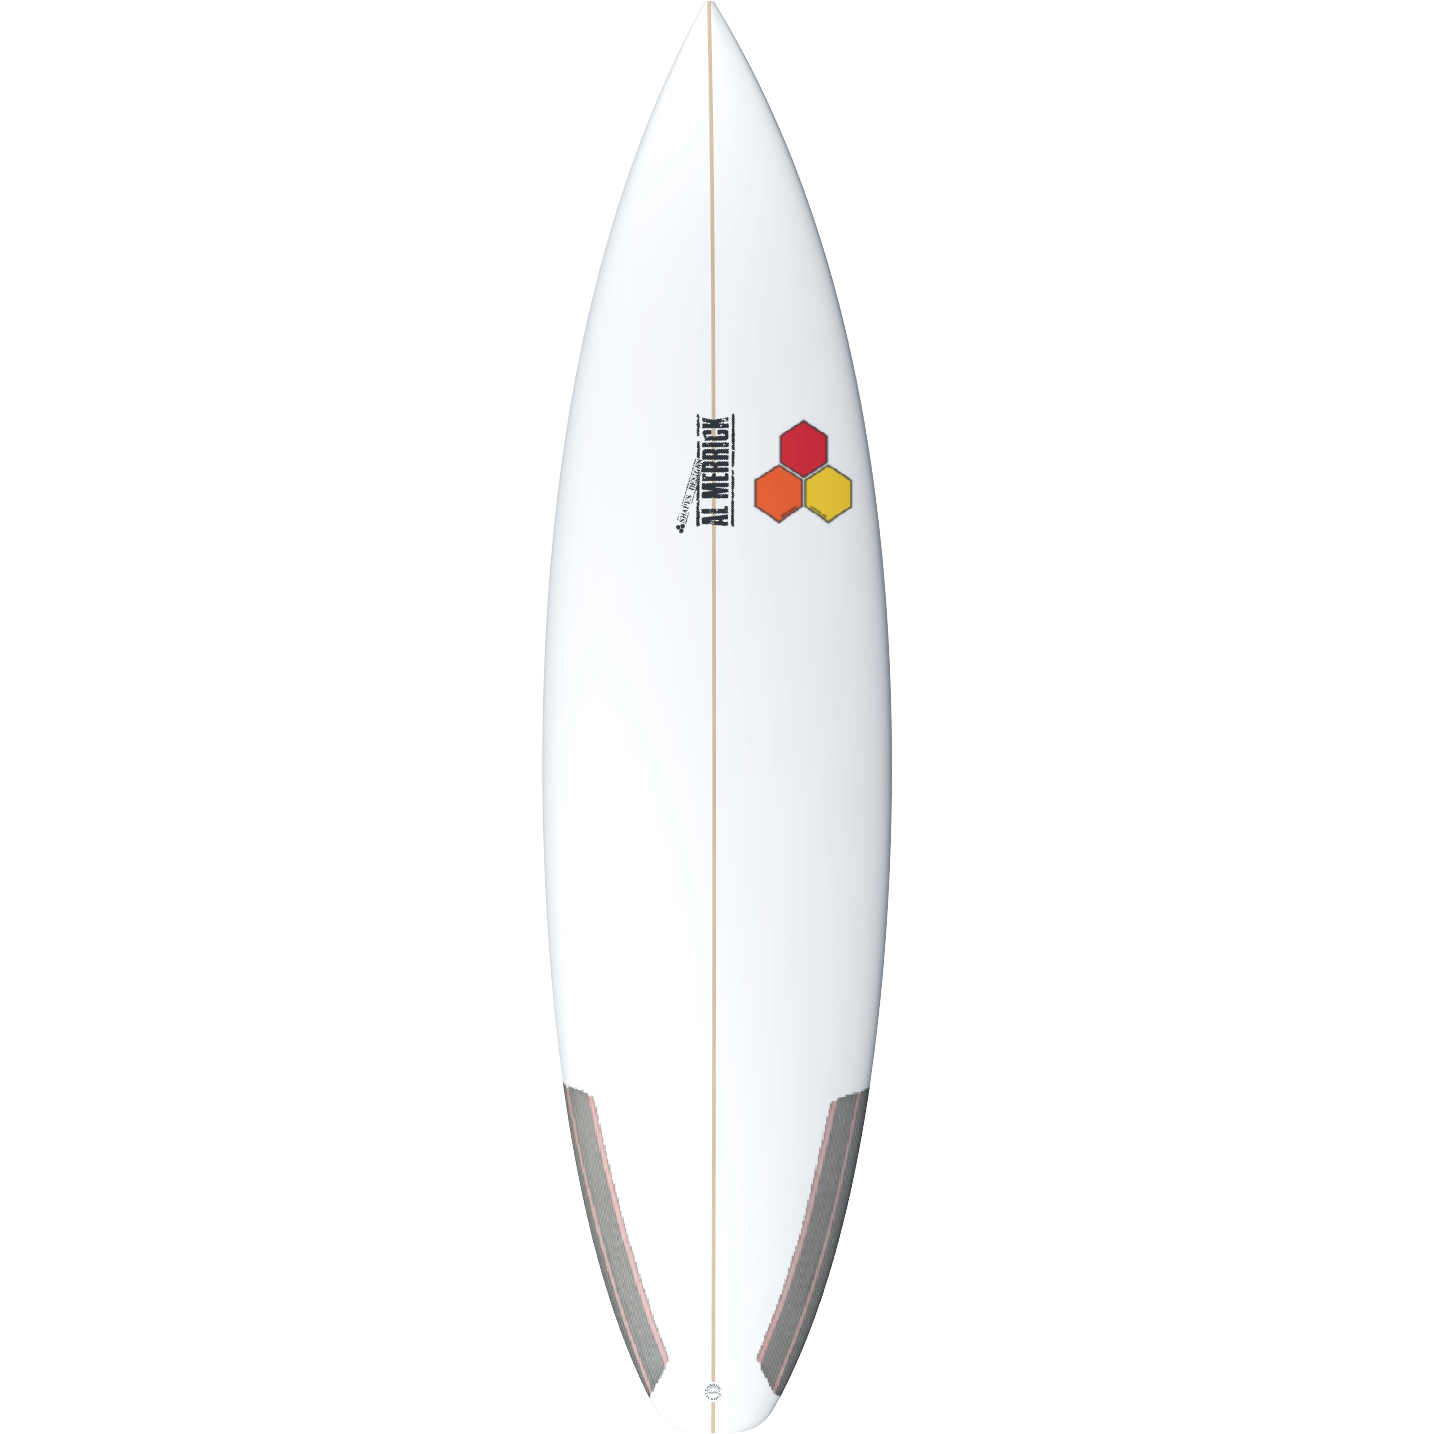 Channel Islands - Proton Surfboard